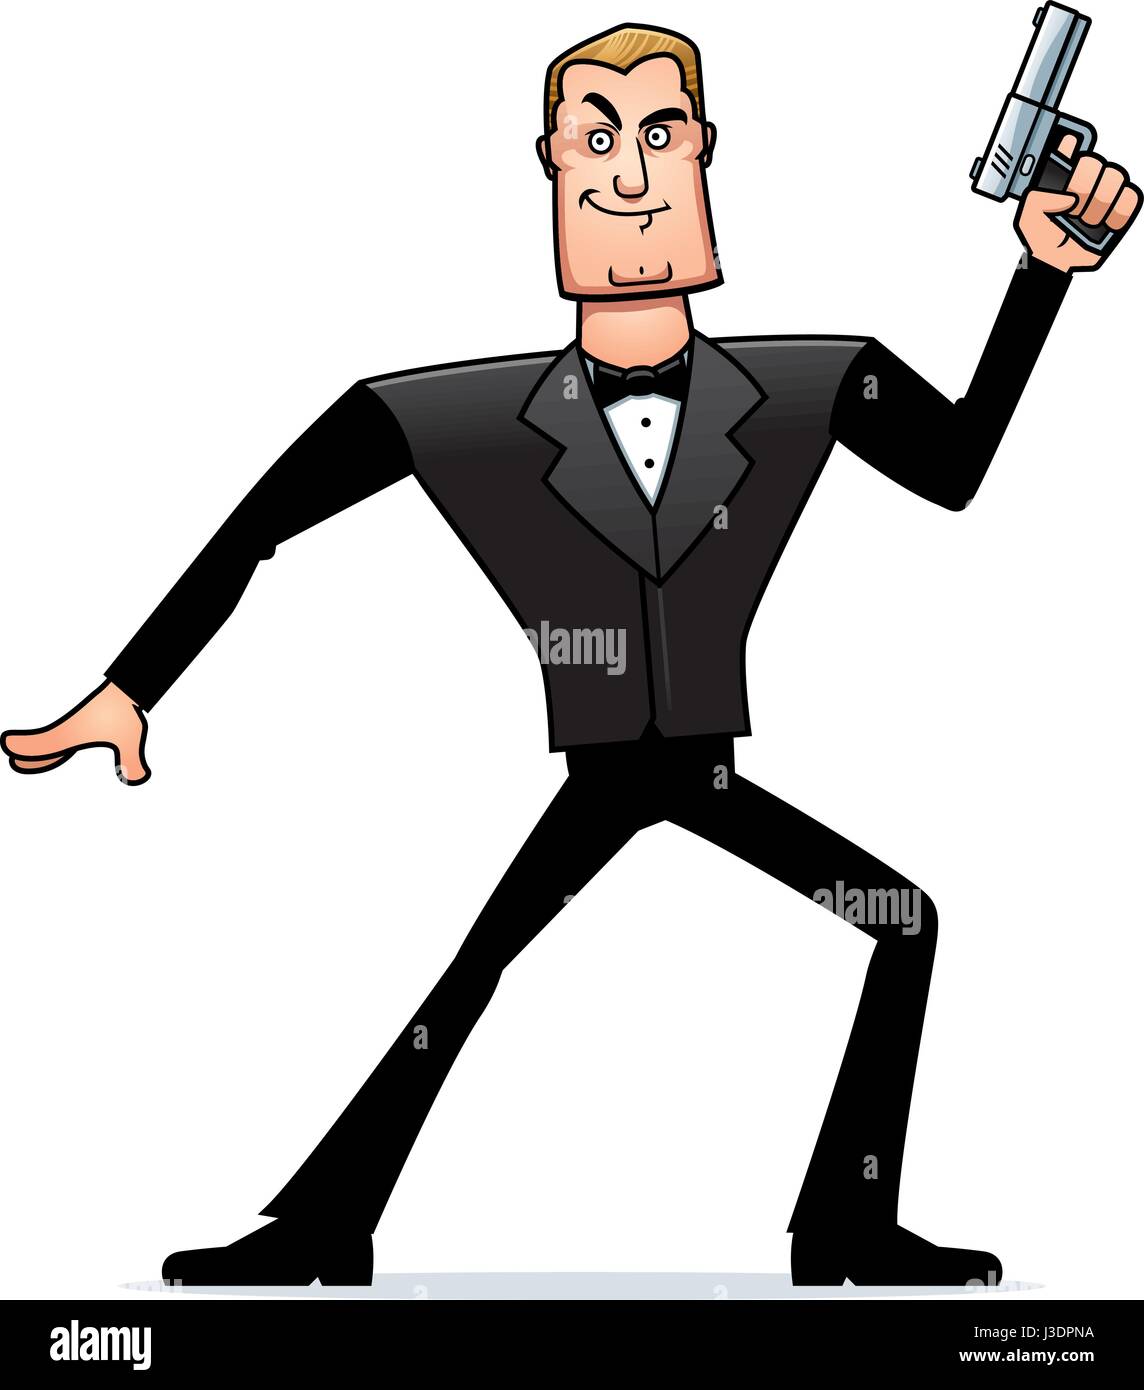 A cartoon illustration of a spy in a tuxedo with a gun. Stock Vector